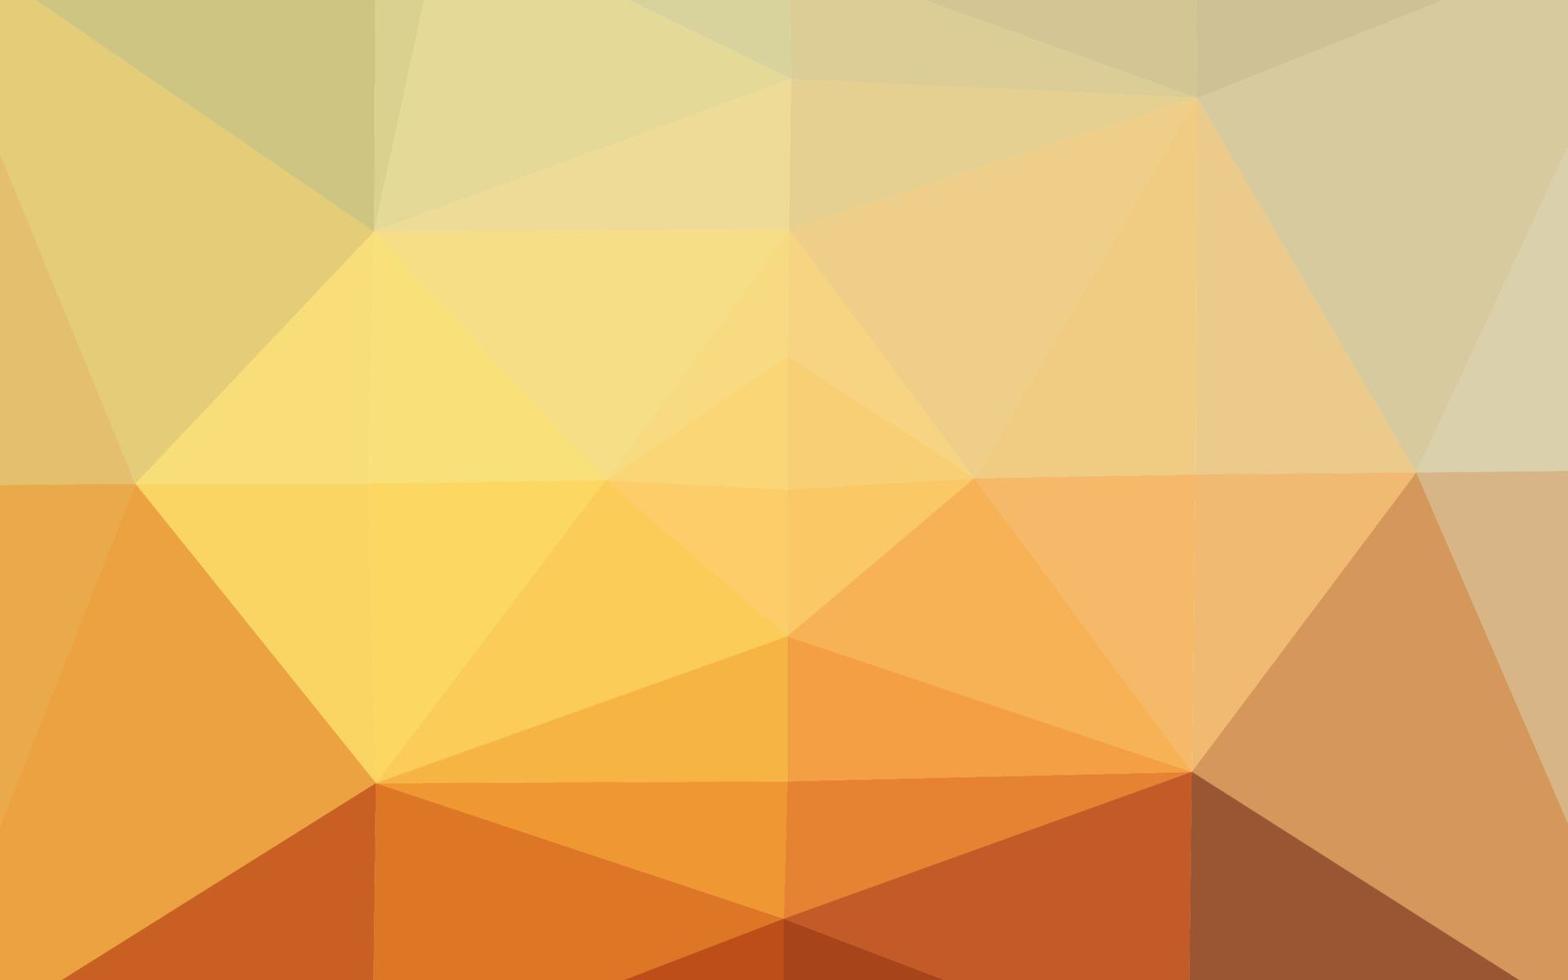 hellgelber, orangefarbener Vektorpolygon-Zusammenfassungshintergrund. vektor